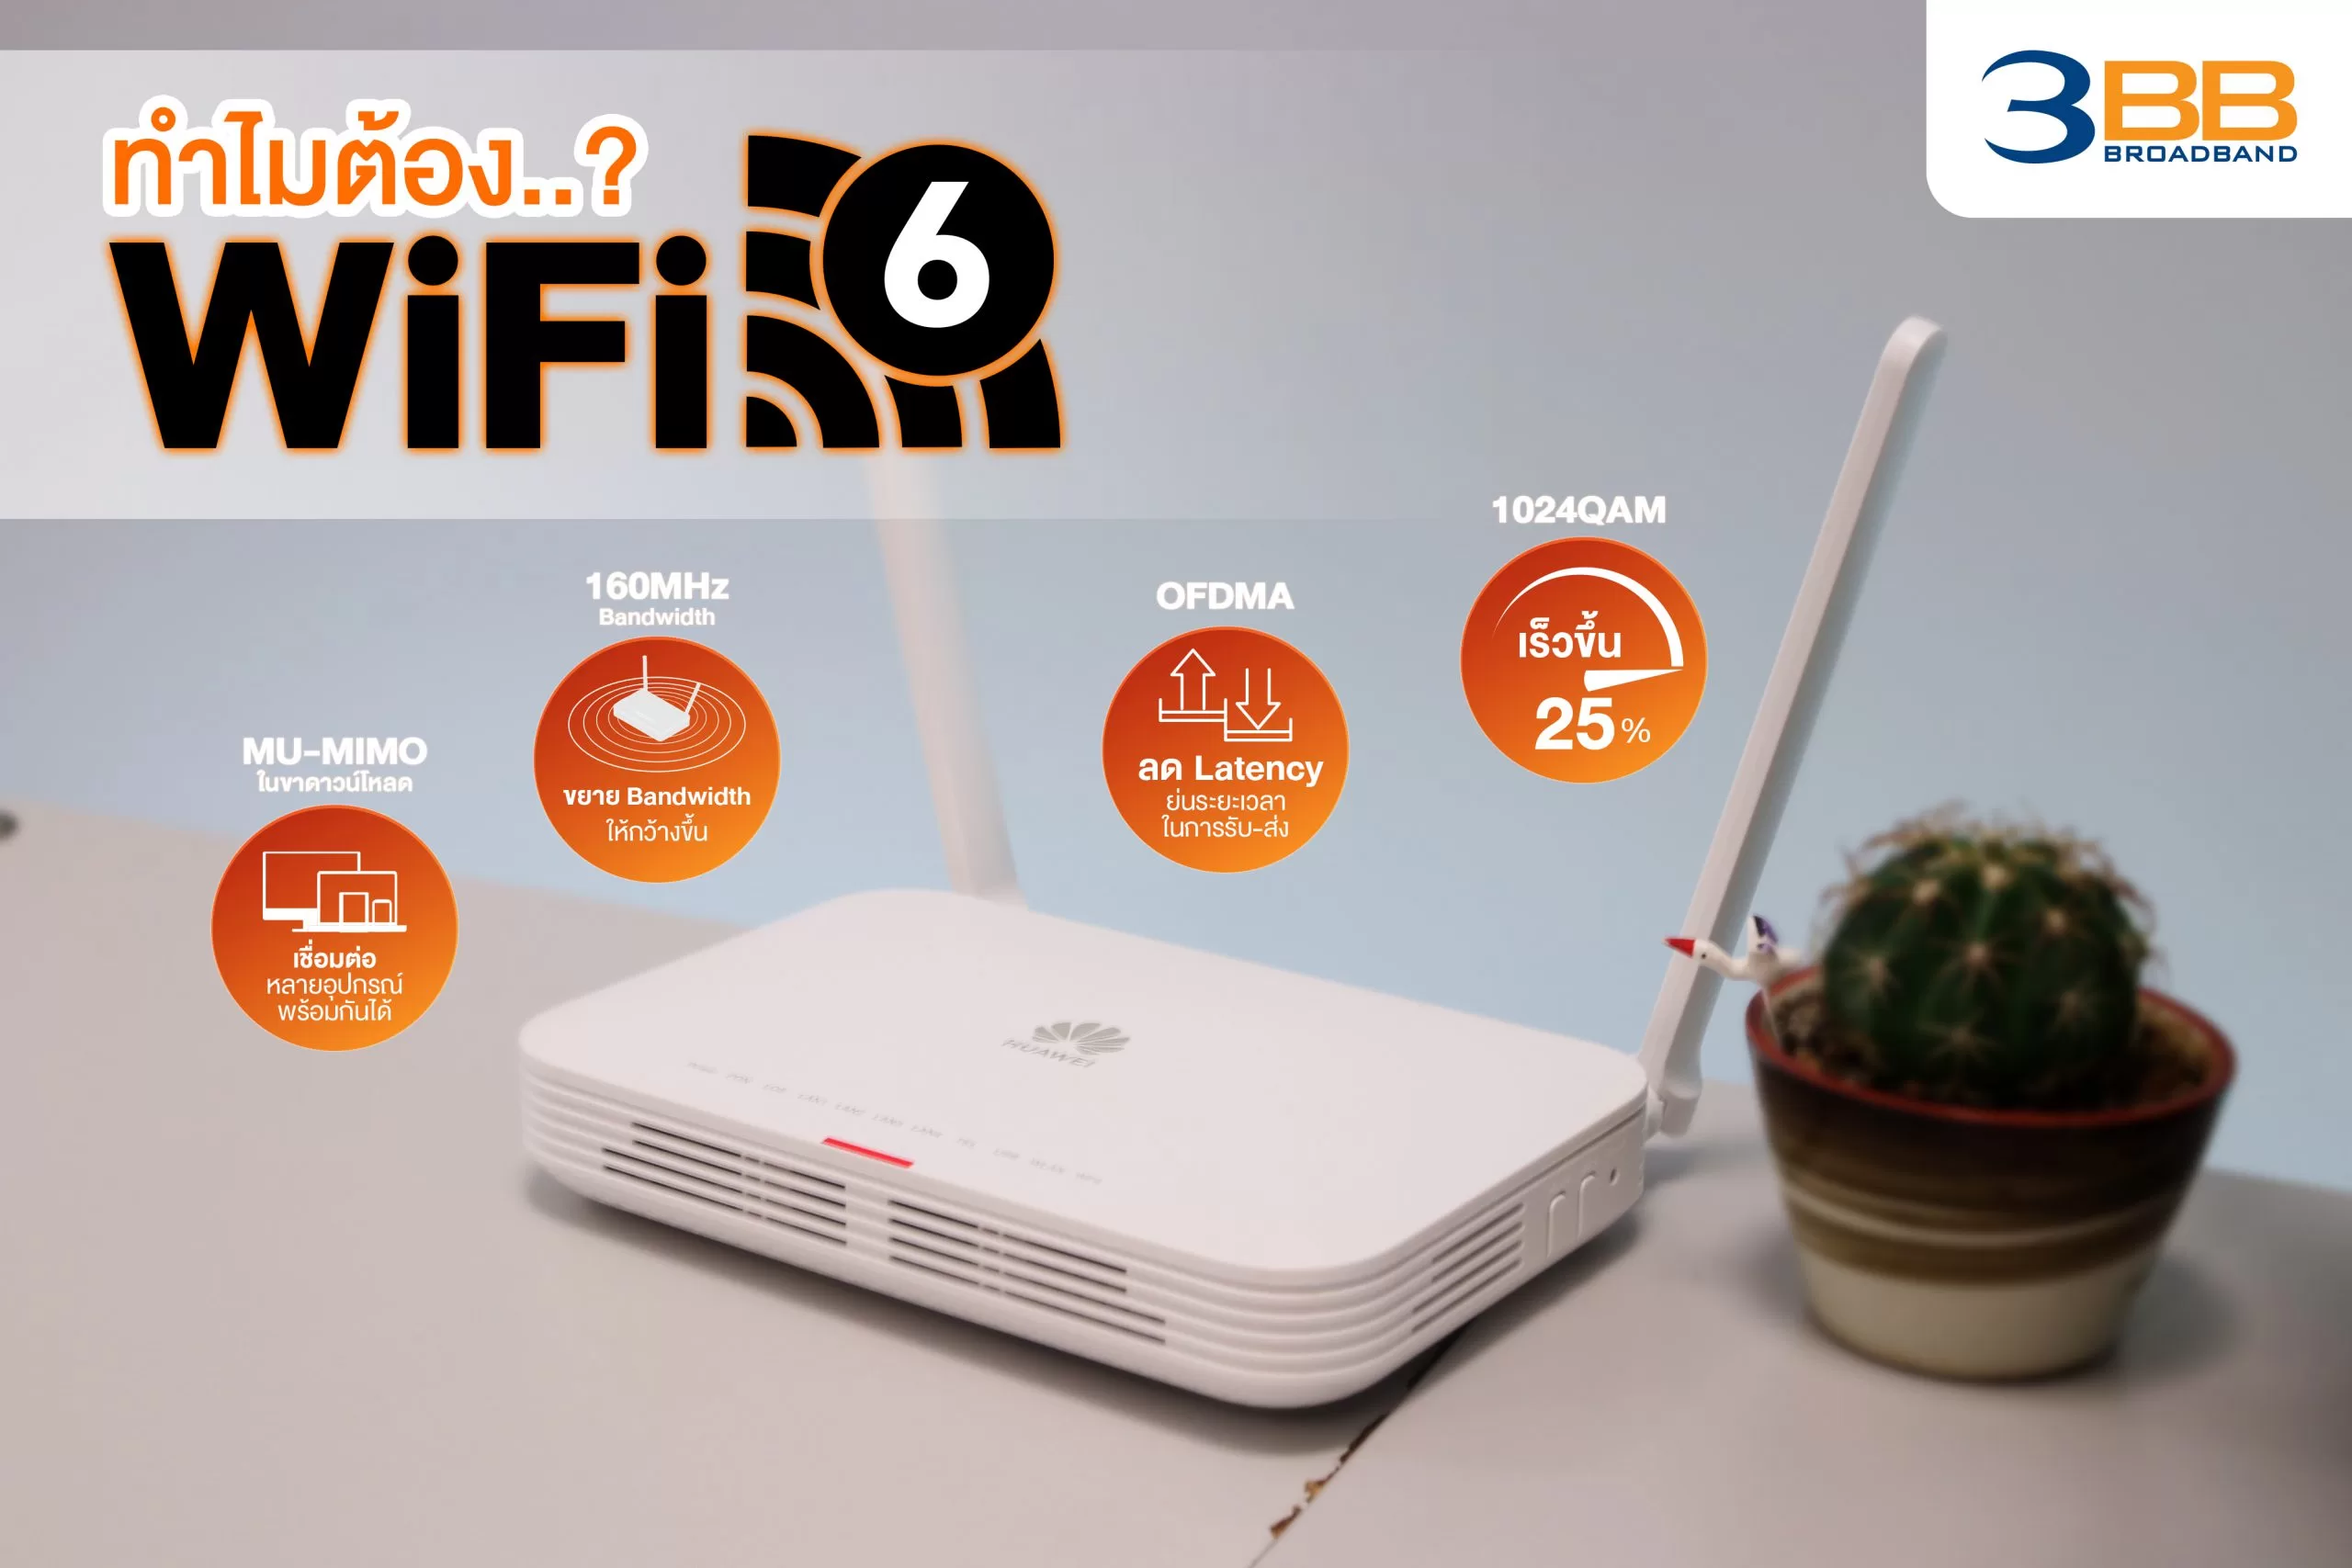 2 ทำไมต้อง WiFi6 Router ขาว scaled | 3bb | แกะกล่องเราเตอร์ฟรีจาก 3BB รุ่นใหม่ รองรับ Wi-Fi 6!